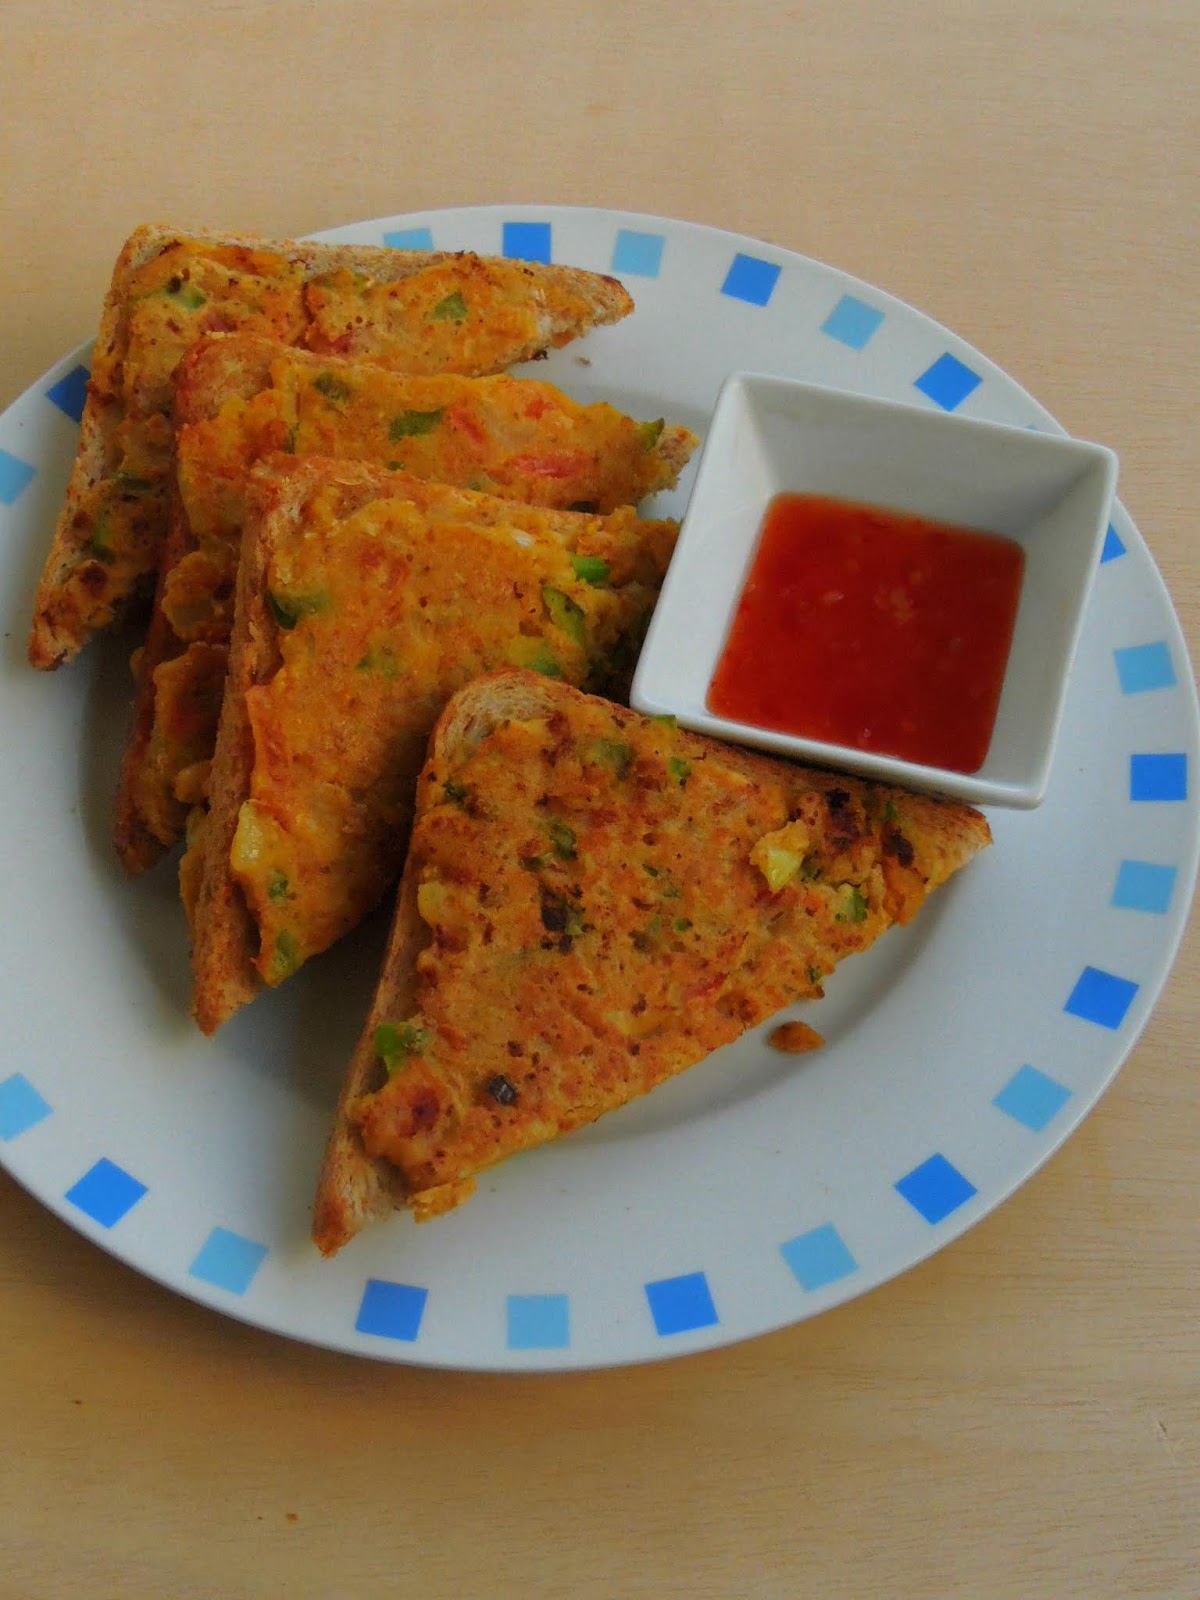 Priya's Versatile Recipes: Vegan Besan & Oats Bread Toast/Vegetable ...